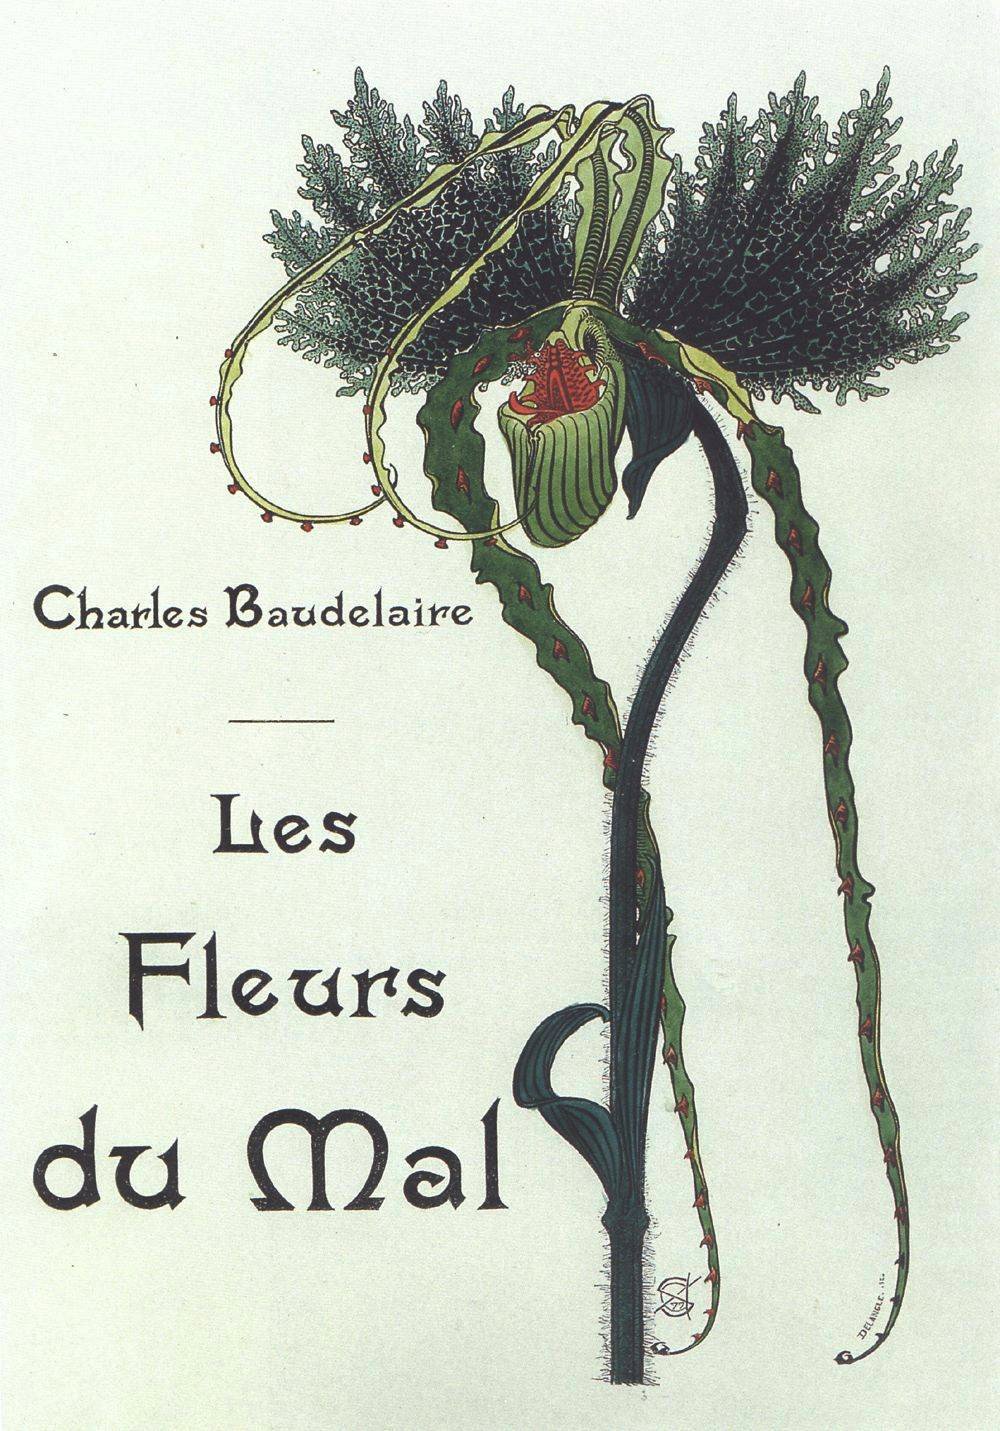 La poesia della settimana: Spleen di Charles Baudelaire